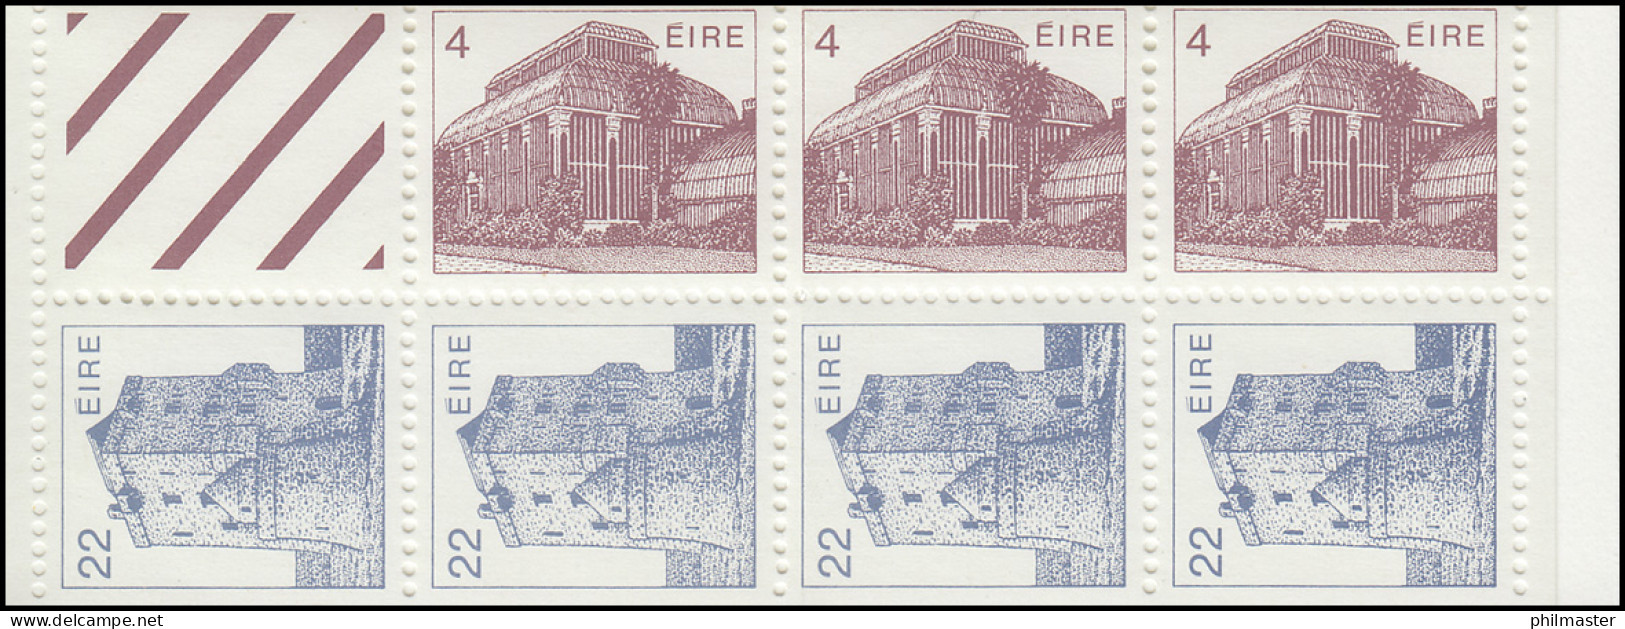 Irland-Markenheftchen 6 Architektur 1983, ** Postfrisch - Libretti